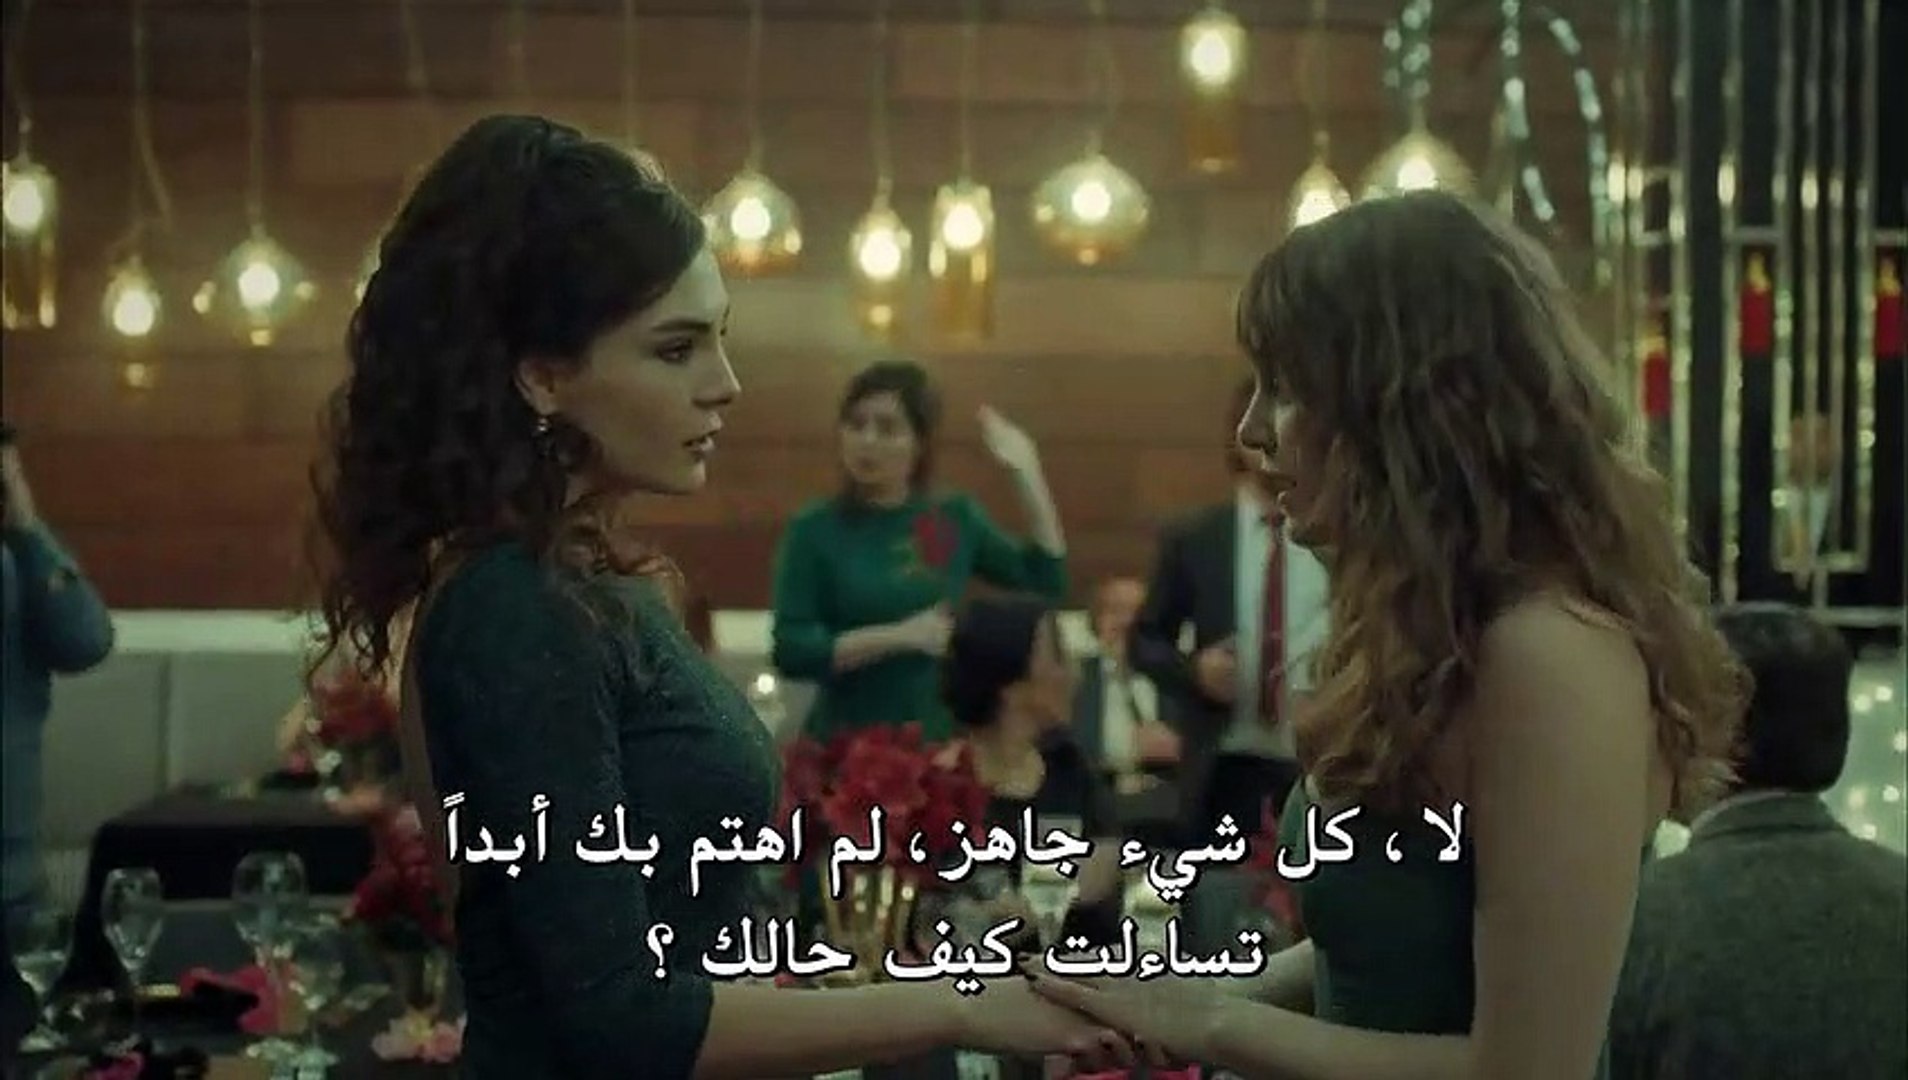 مسلسل عروس اسطنبول الموسم الثاني الحلقة 42 كاملة القسم 1 مترجمة للعربية -  Video Dailymotion - فيديو Dailymotion